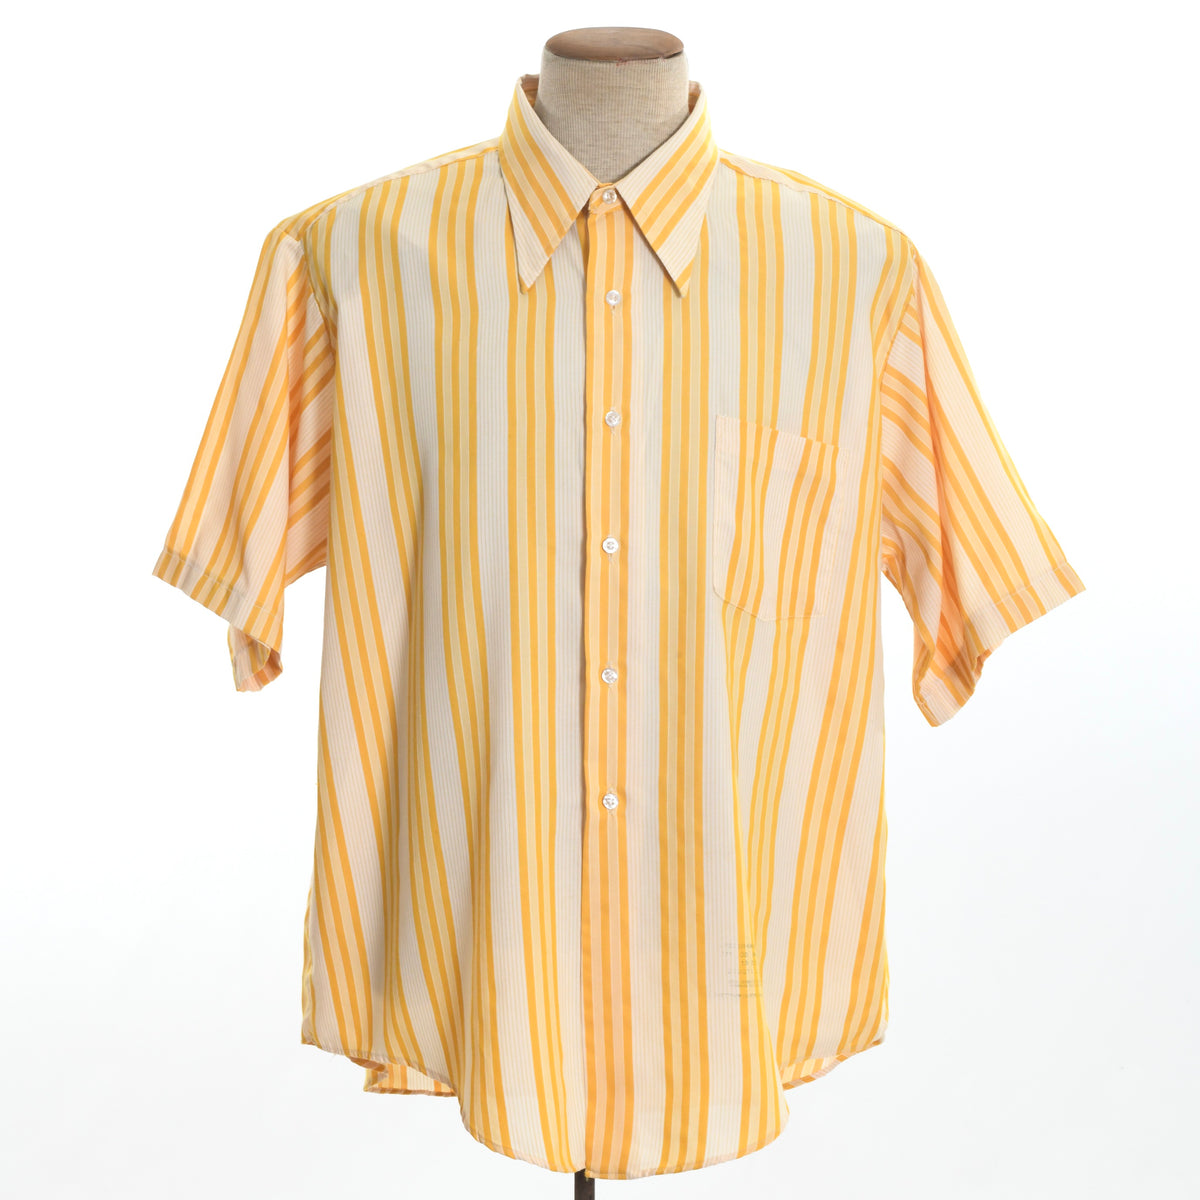 S - Yellow Bass Button Up Short Sleeve Shirt - Depop